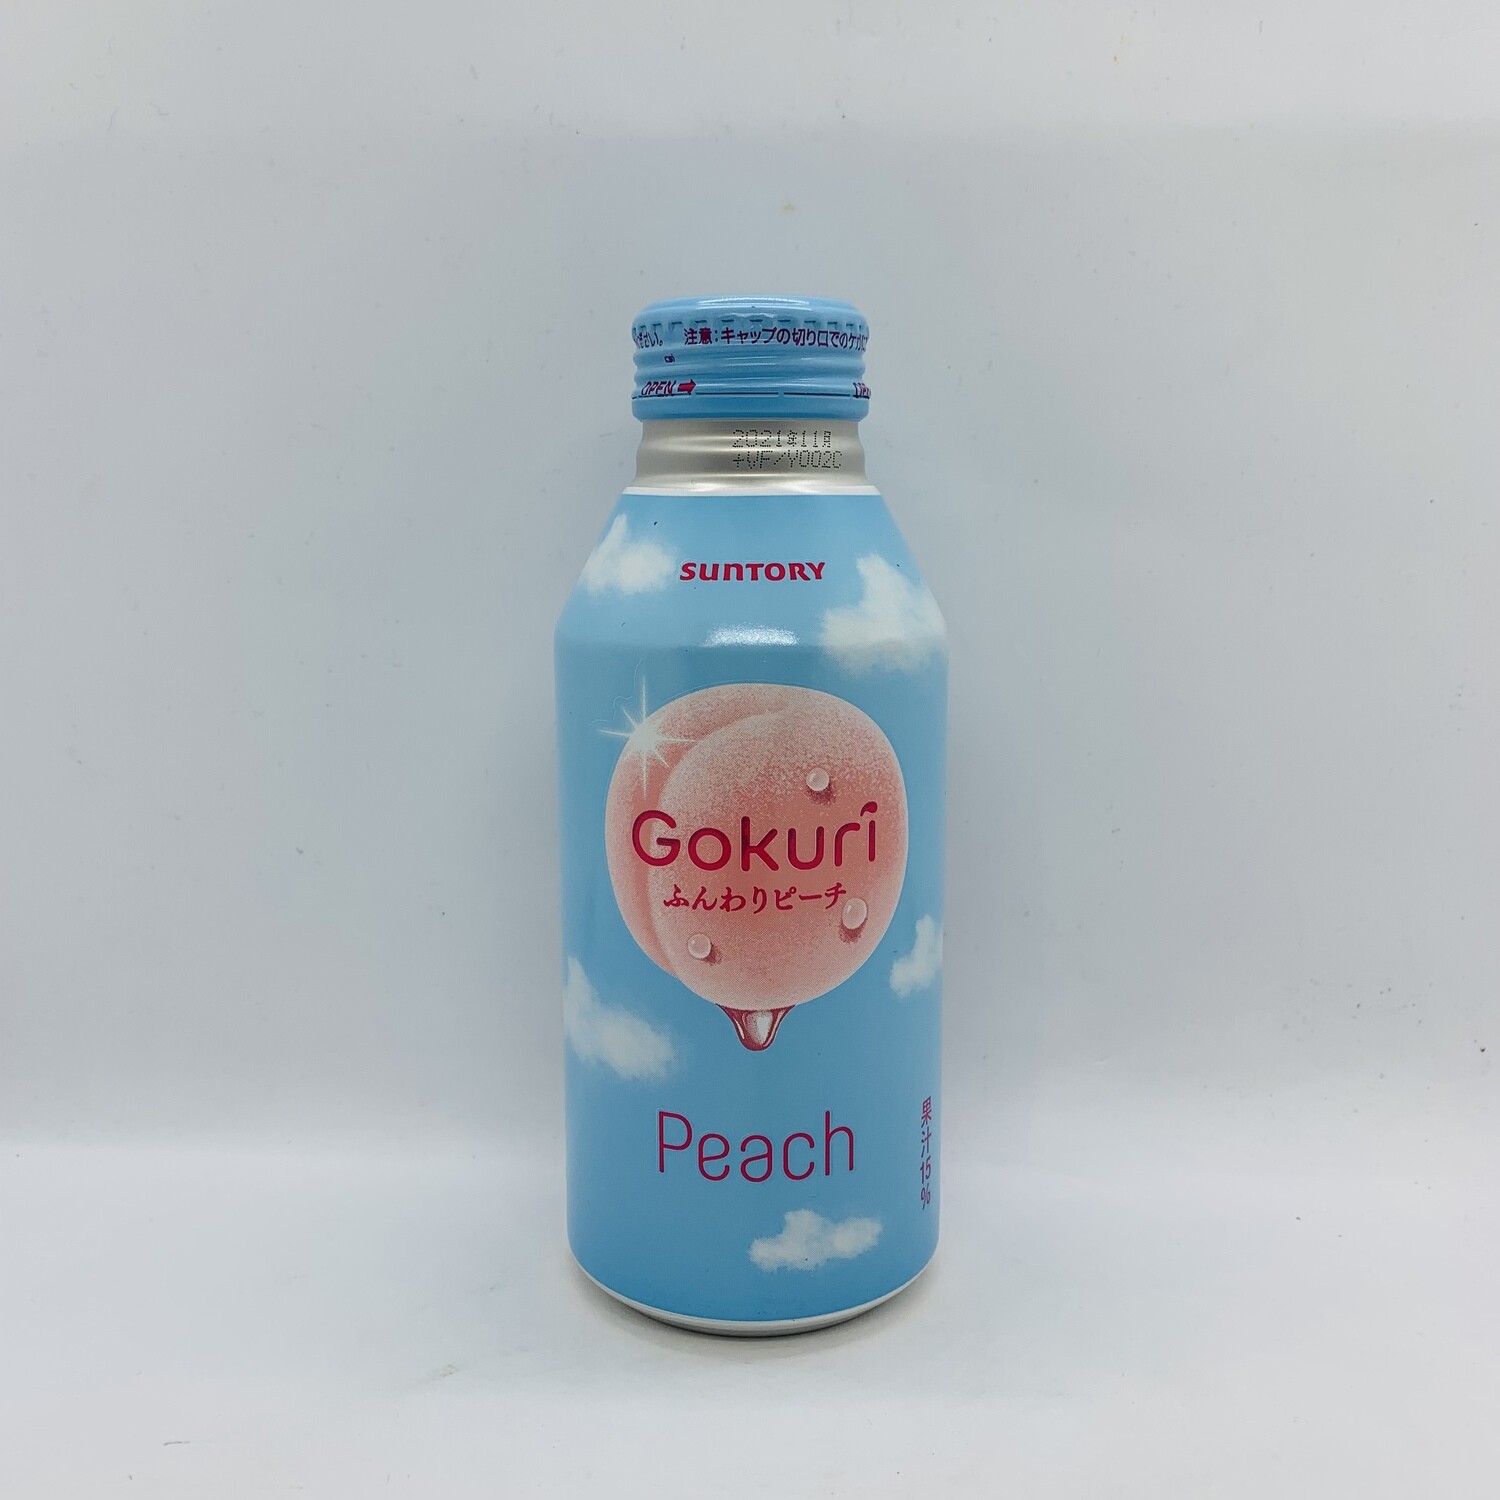 Gokuri Peach